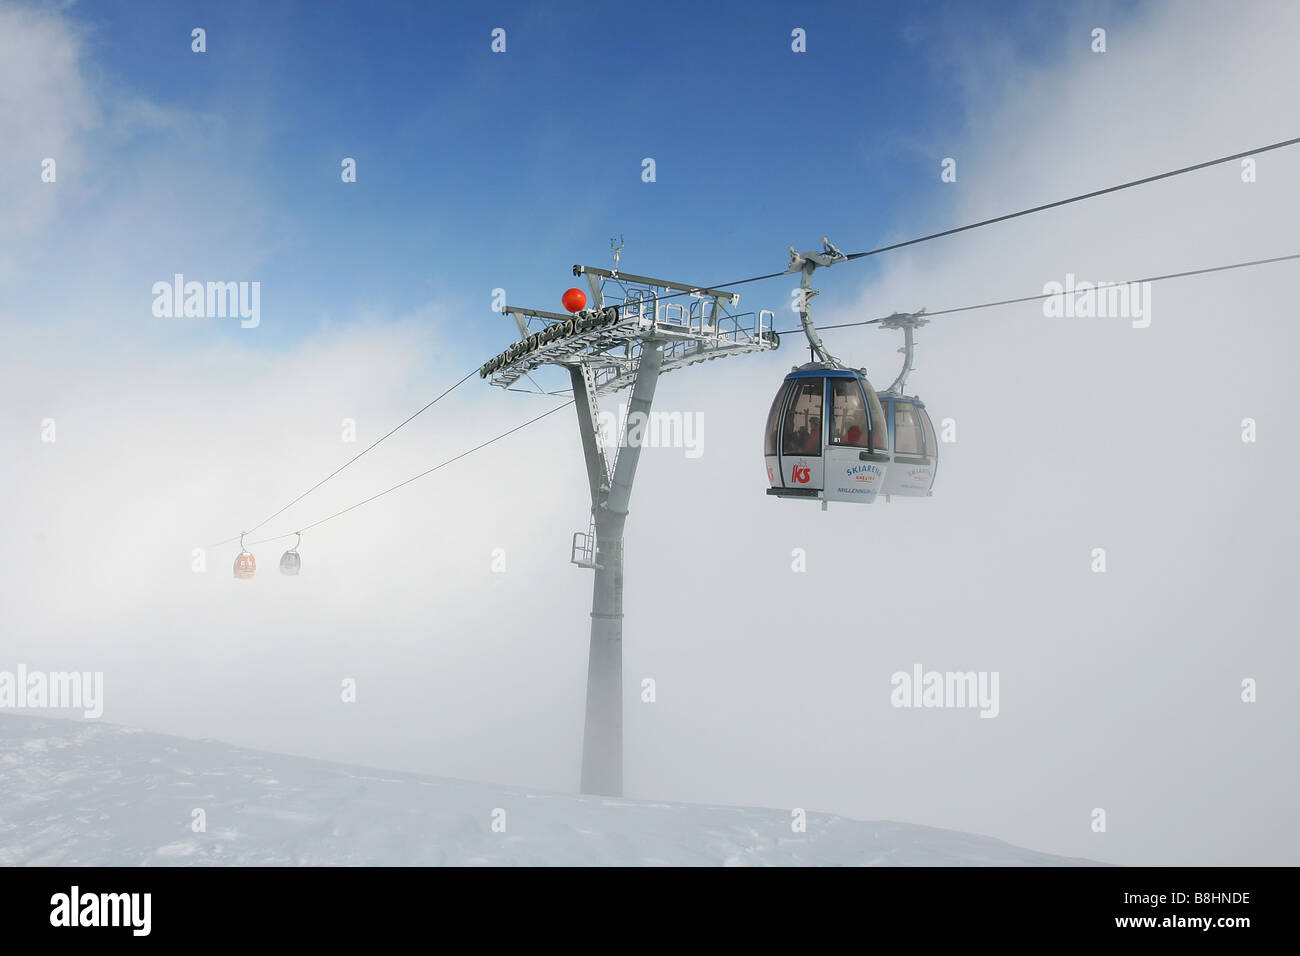 der längste Skilift in der Welt am Nassfeld verschwindet in den Wolken Stockfoto